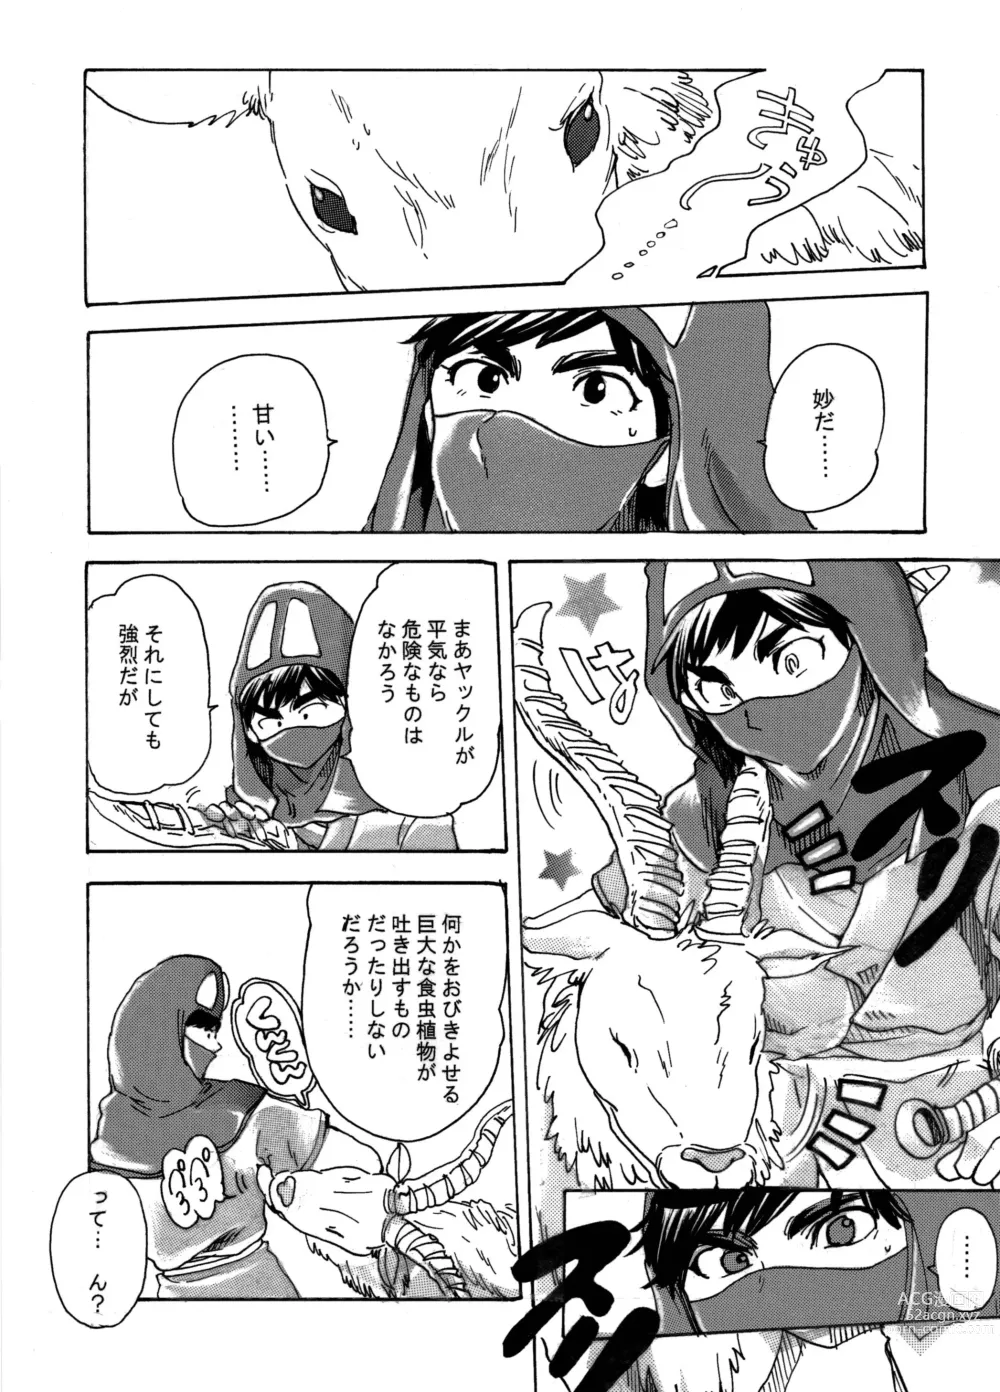 Page 21 of doujinshi Ashitaka no Mori